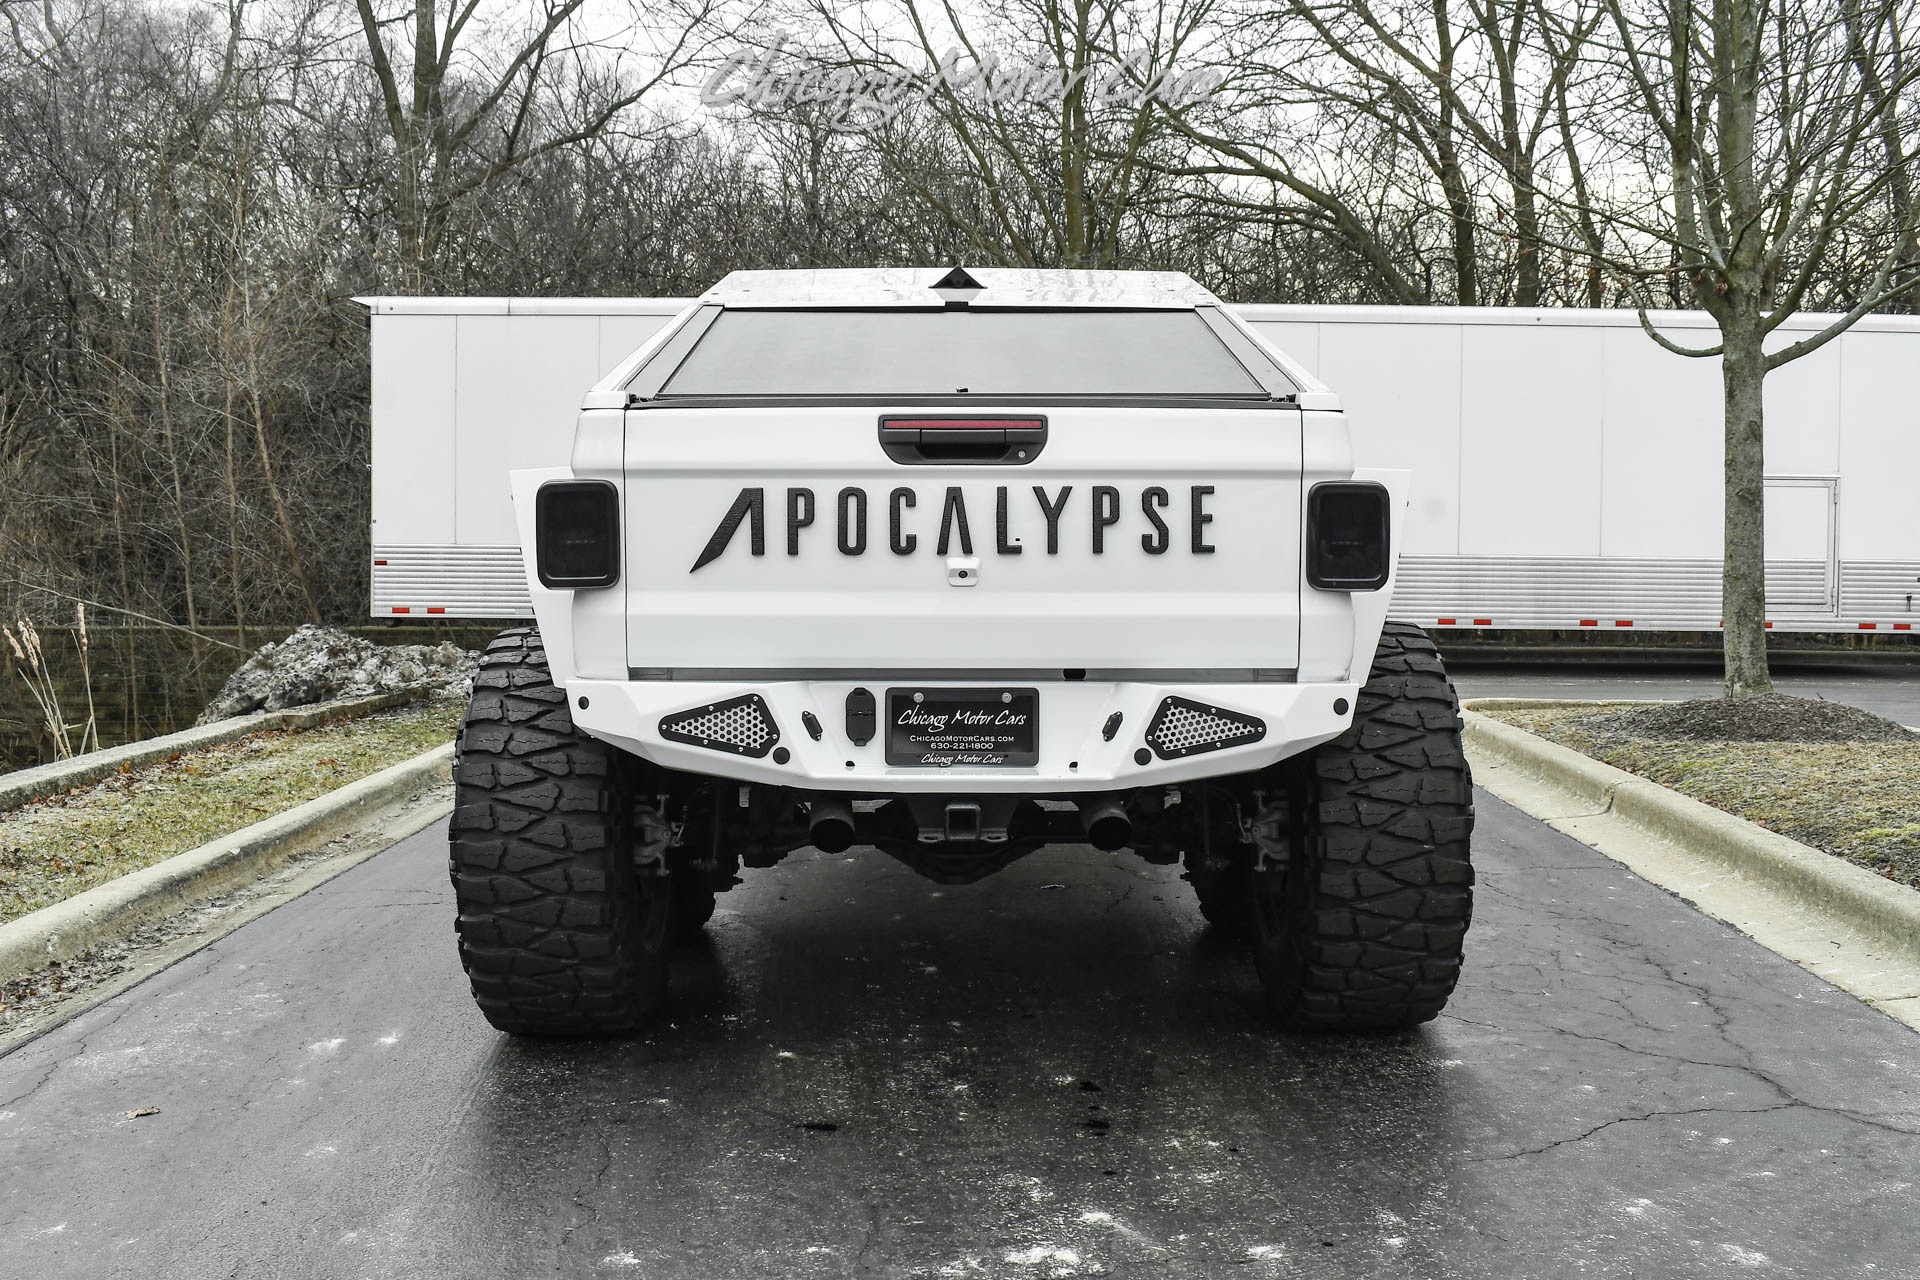 Used-2021-Jeep-Gladiator-Apocalypse-Hellfire-6X6-30-Diesel-Over-150KUpgrades-Full-Custom-Build